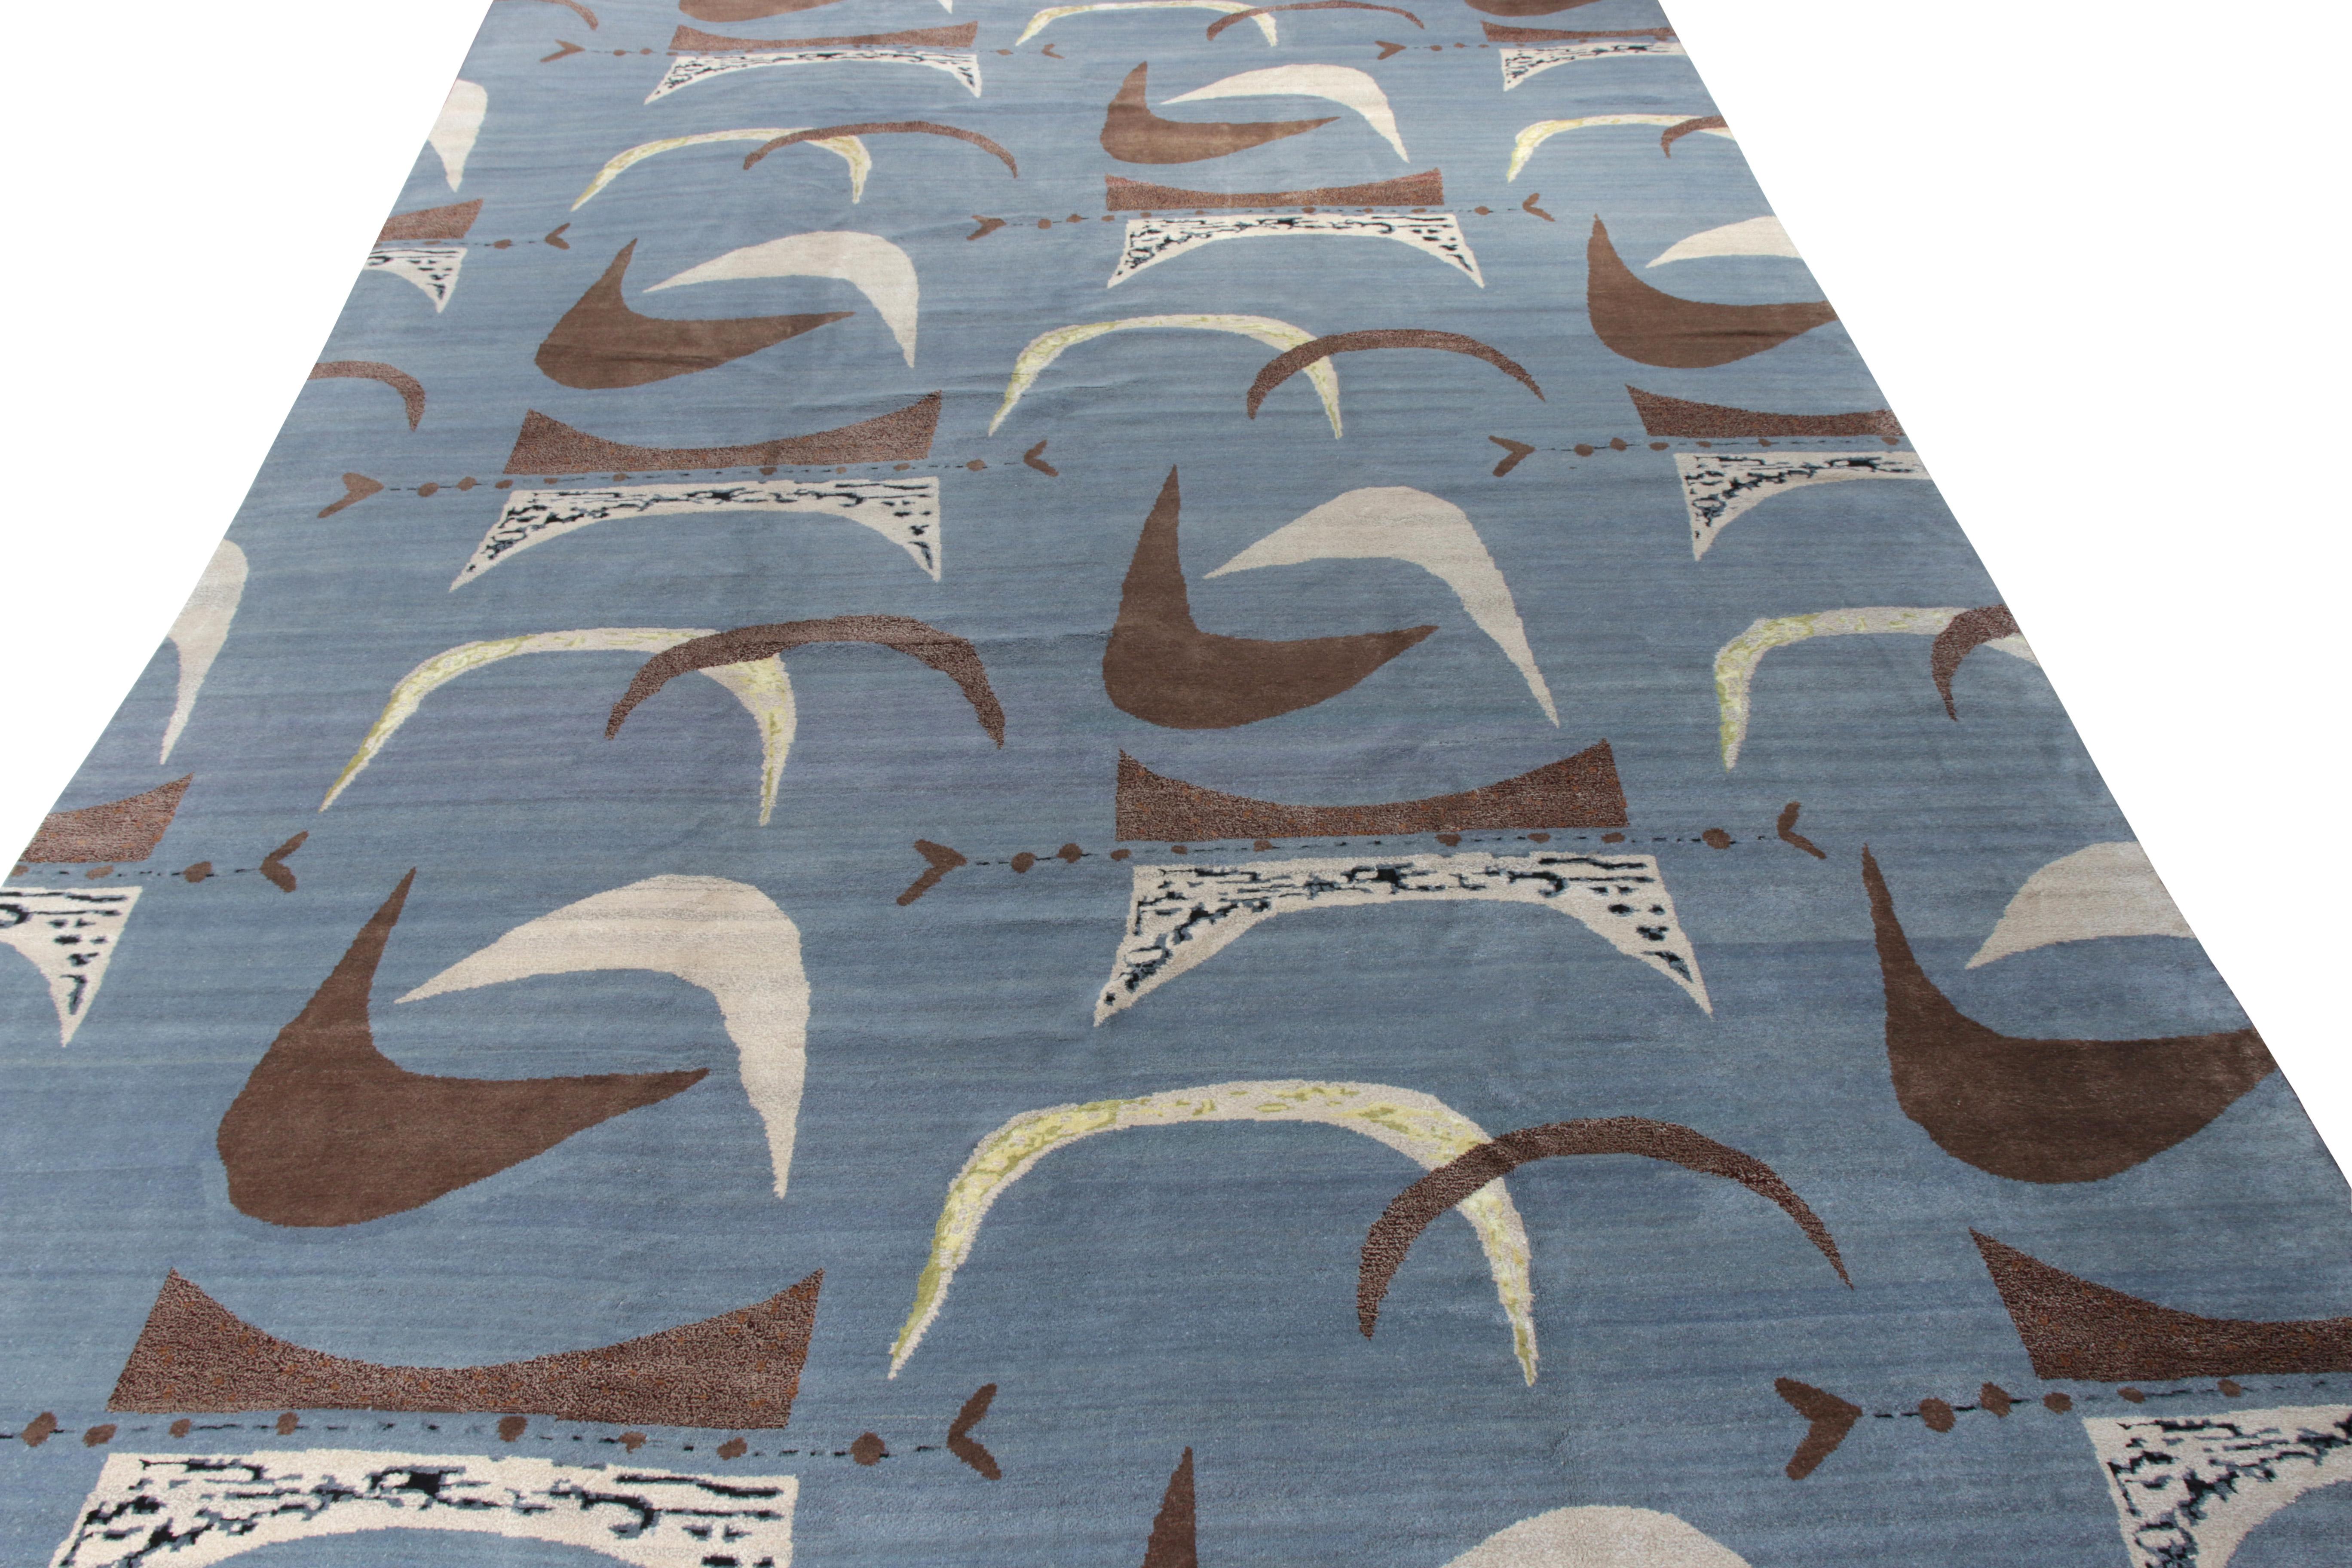 Dieser moderne Teppich im Format 12x18 ist eine neue Ergänzung der Mid-Century Modern-Teppichkollektion von Rug & Kilim. Das aus Wolle handgeknüpfte Design ist eine zeitgemäße Interpretation der postmodernen Ästhetik der 1950er Jahre in einer ganz